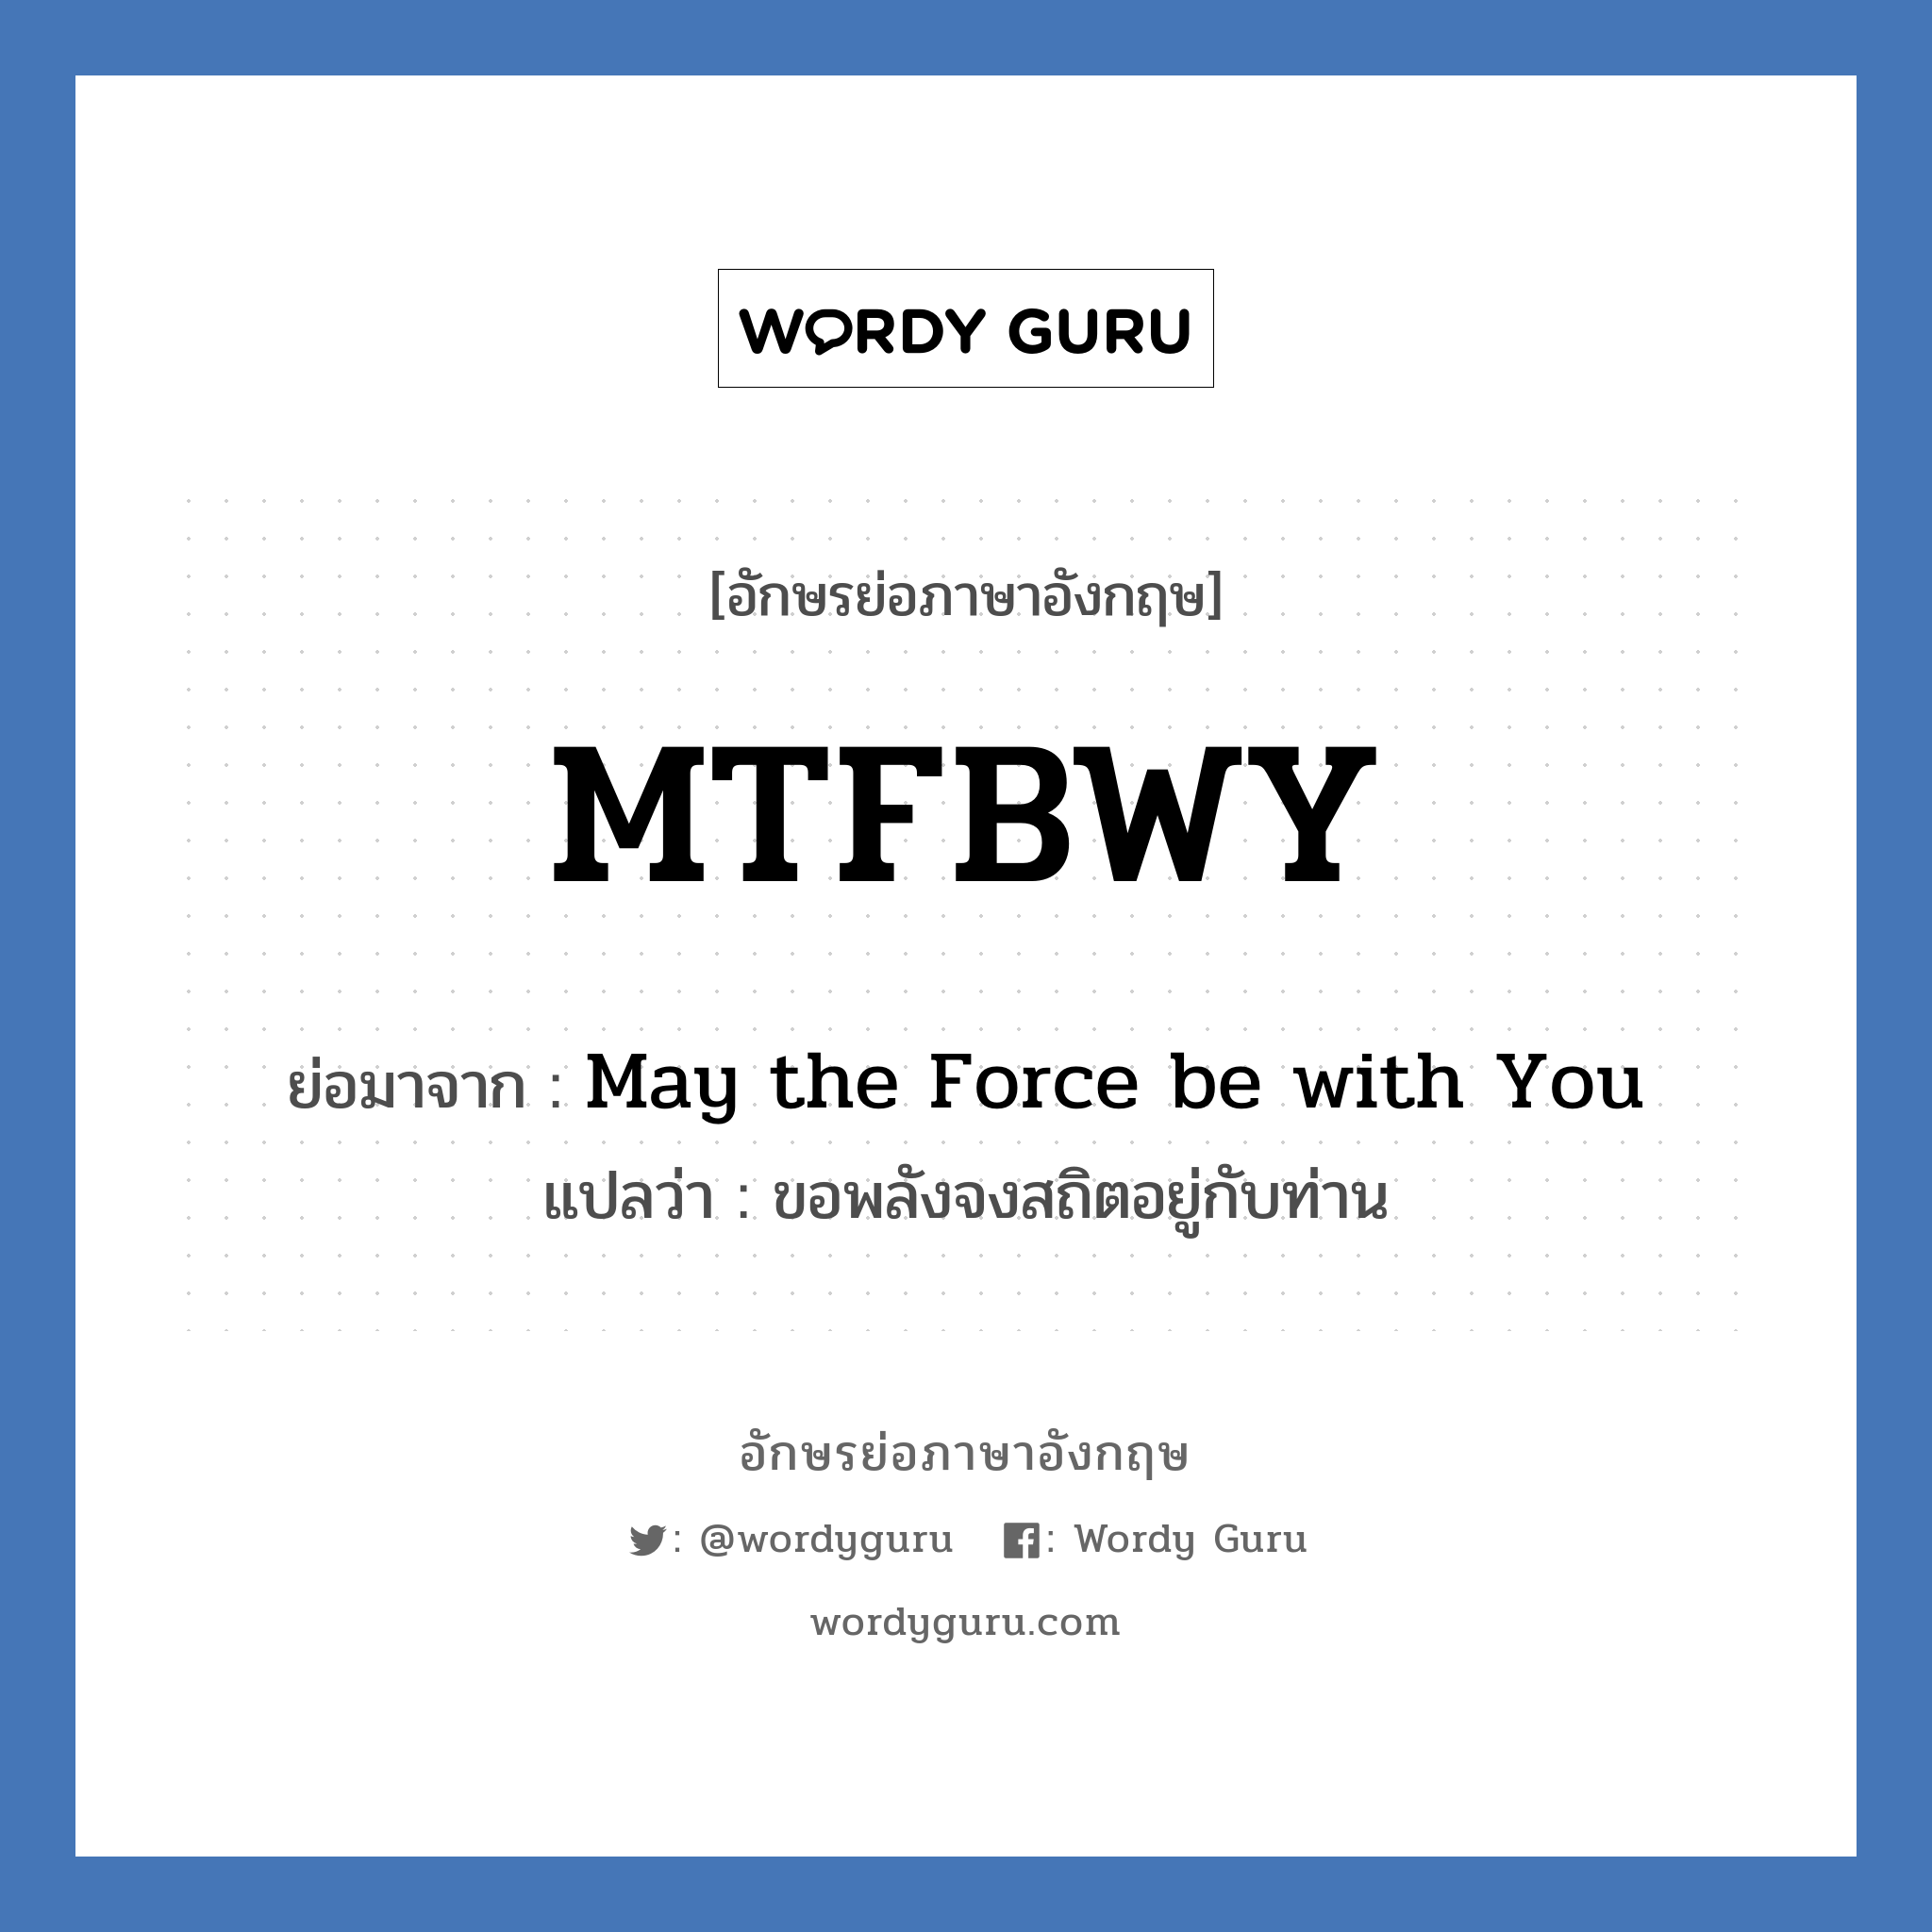 MTFBWY ย่อมาจาก? แปลว่า?, อักษรย่อภาษาอังกฤษ MTFBWY ย่อมาจาก May the Force be with You แปลว่า ขอพลังจงสถิตอยู่กับท่าน หมวด Star Wars หมวด Star Wars